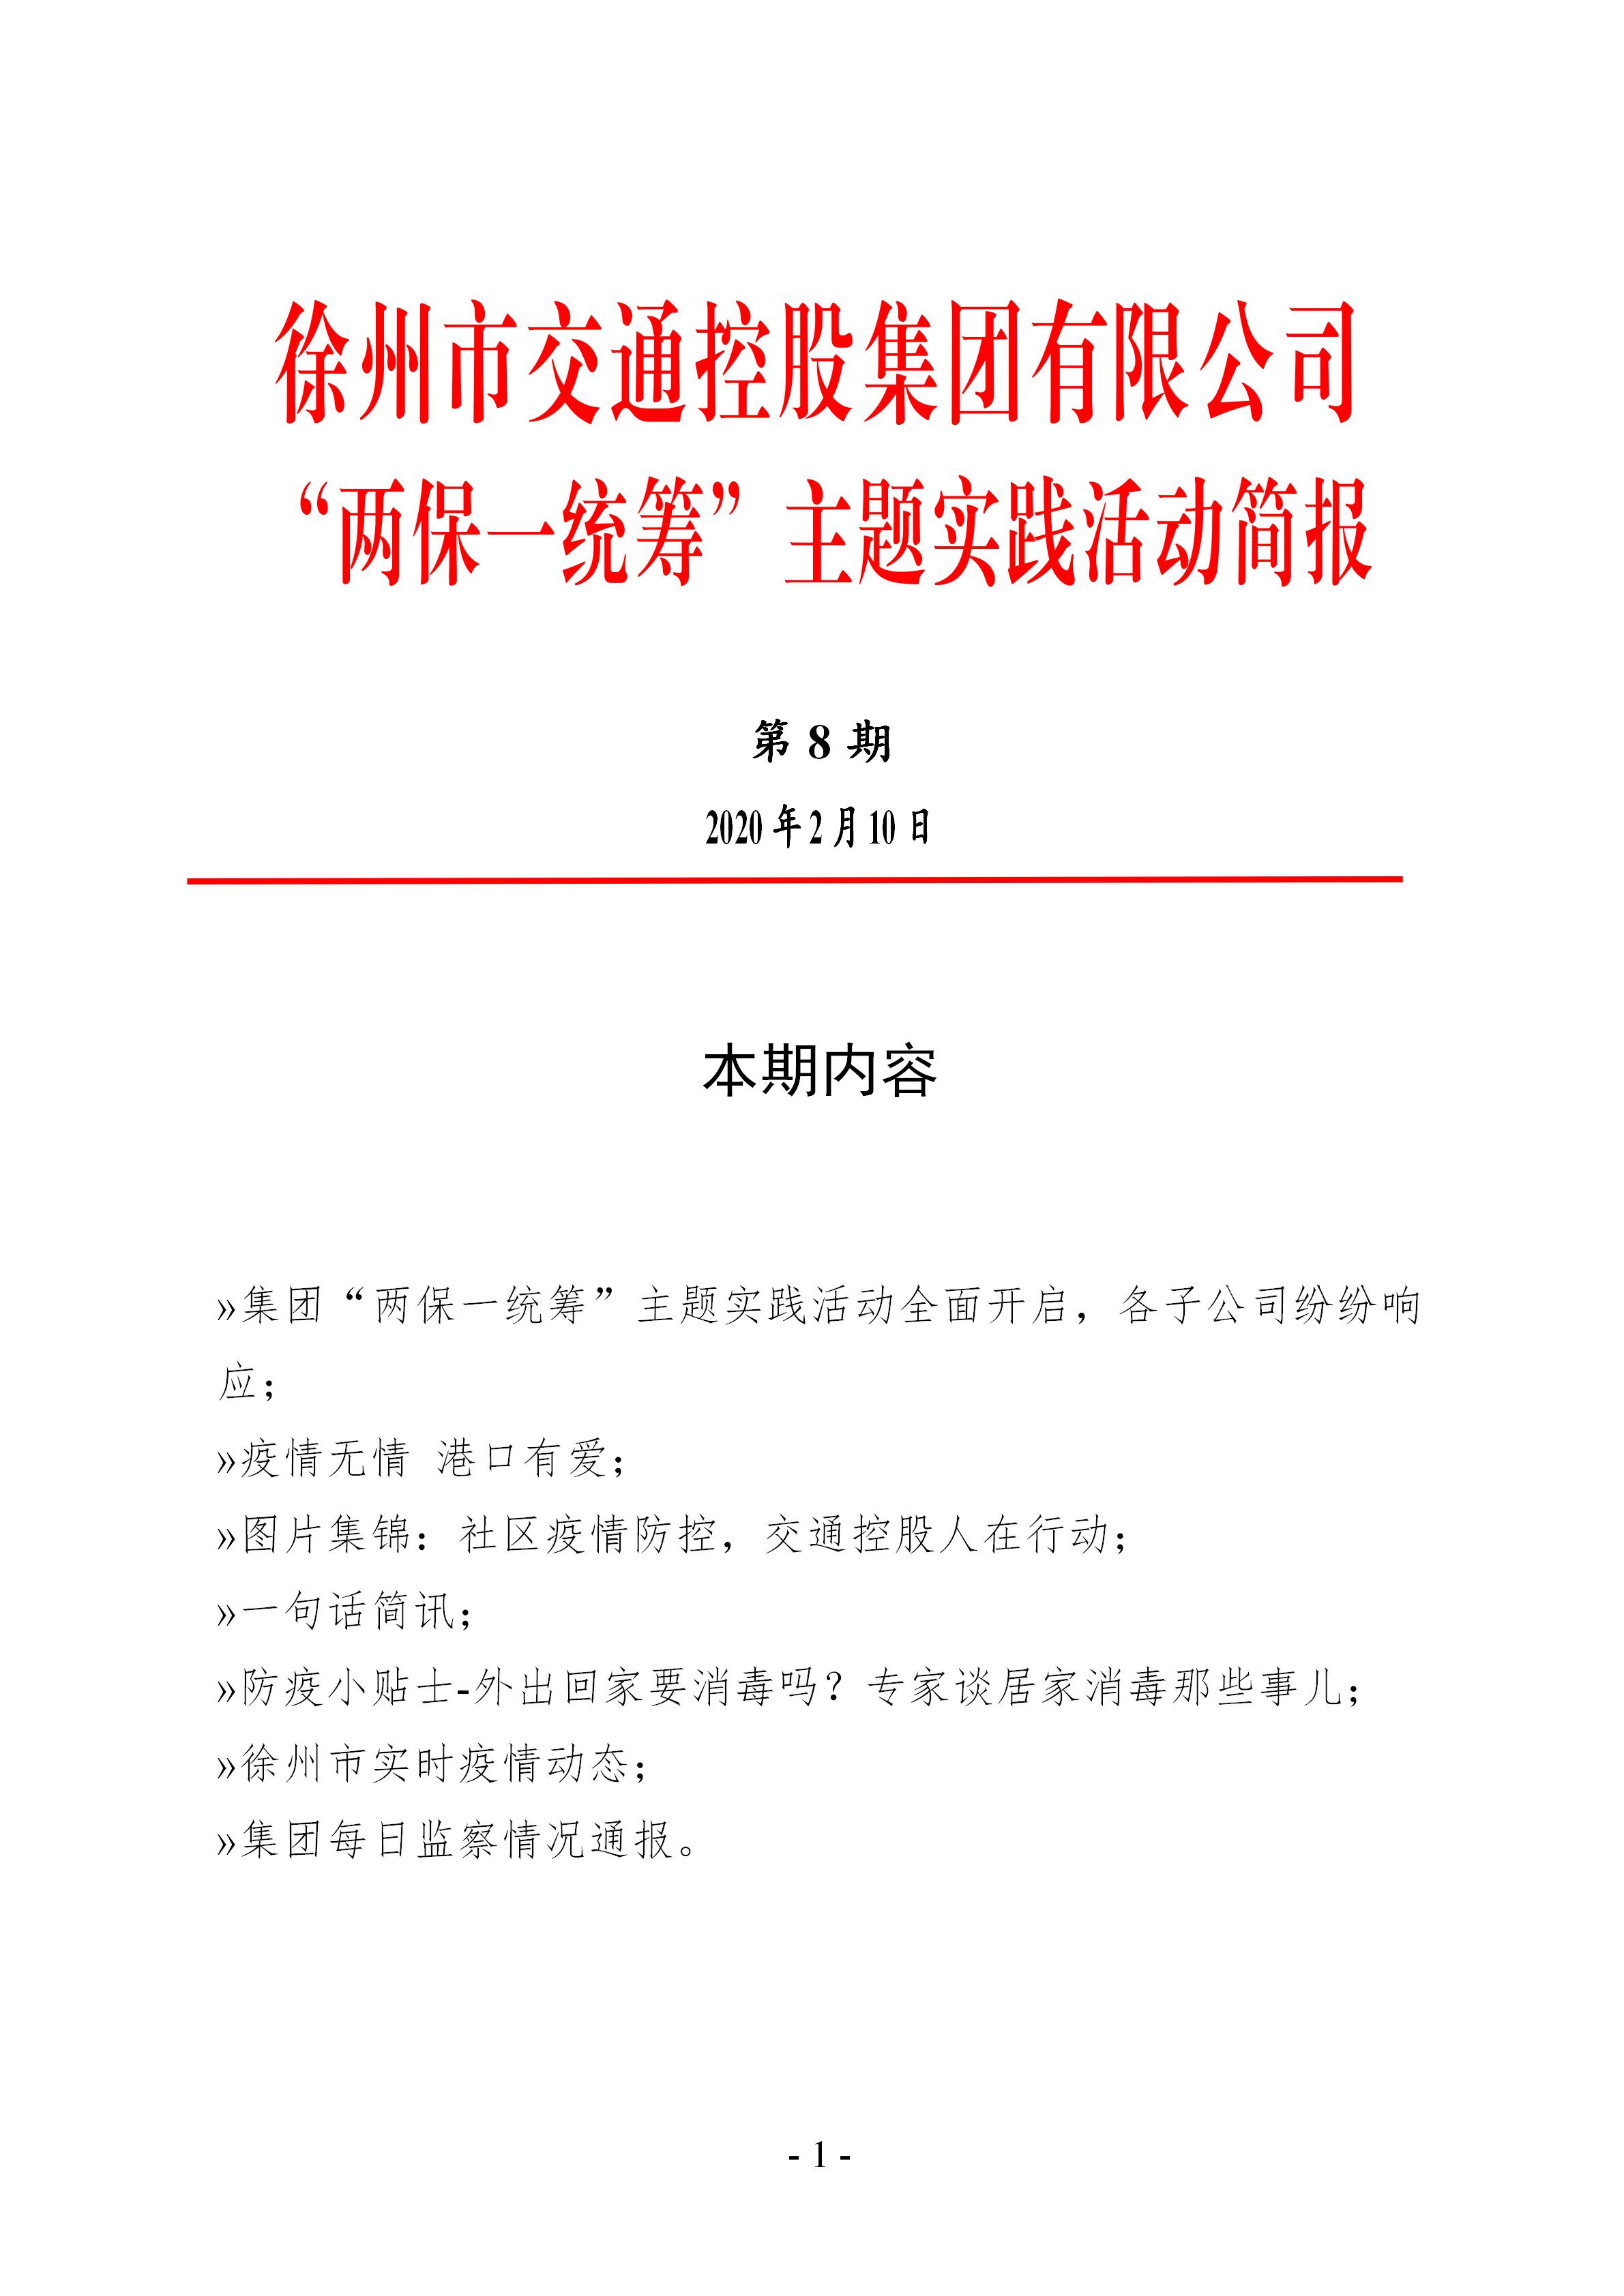 （第八期2.10）徐州市交通控股集团“两保一统筹”主题实践活动简报